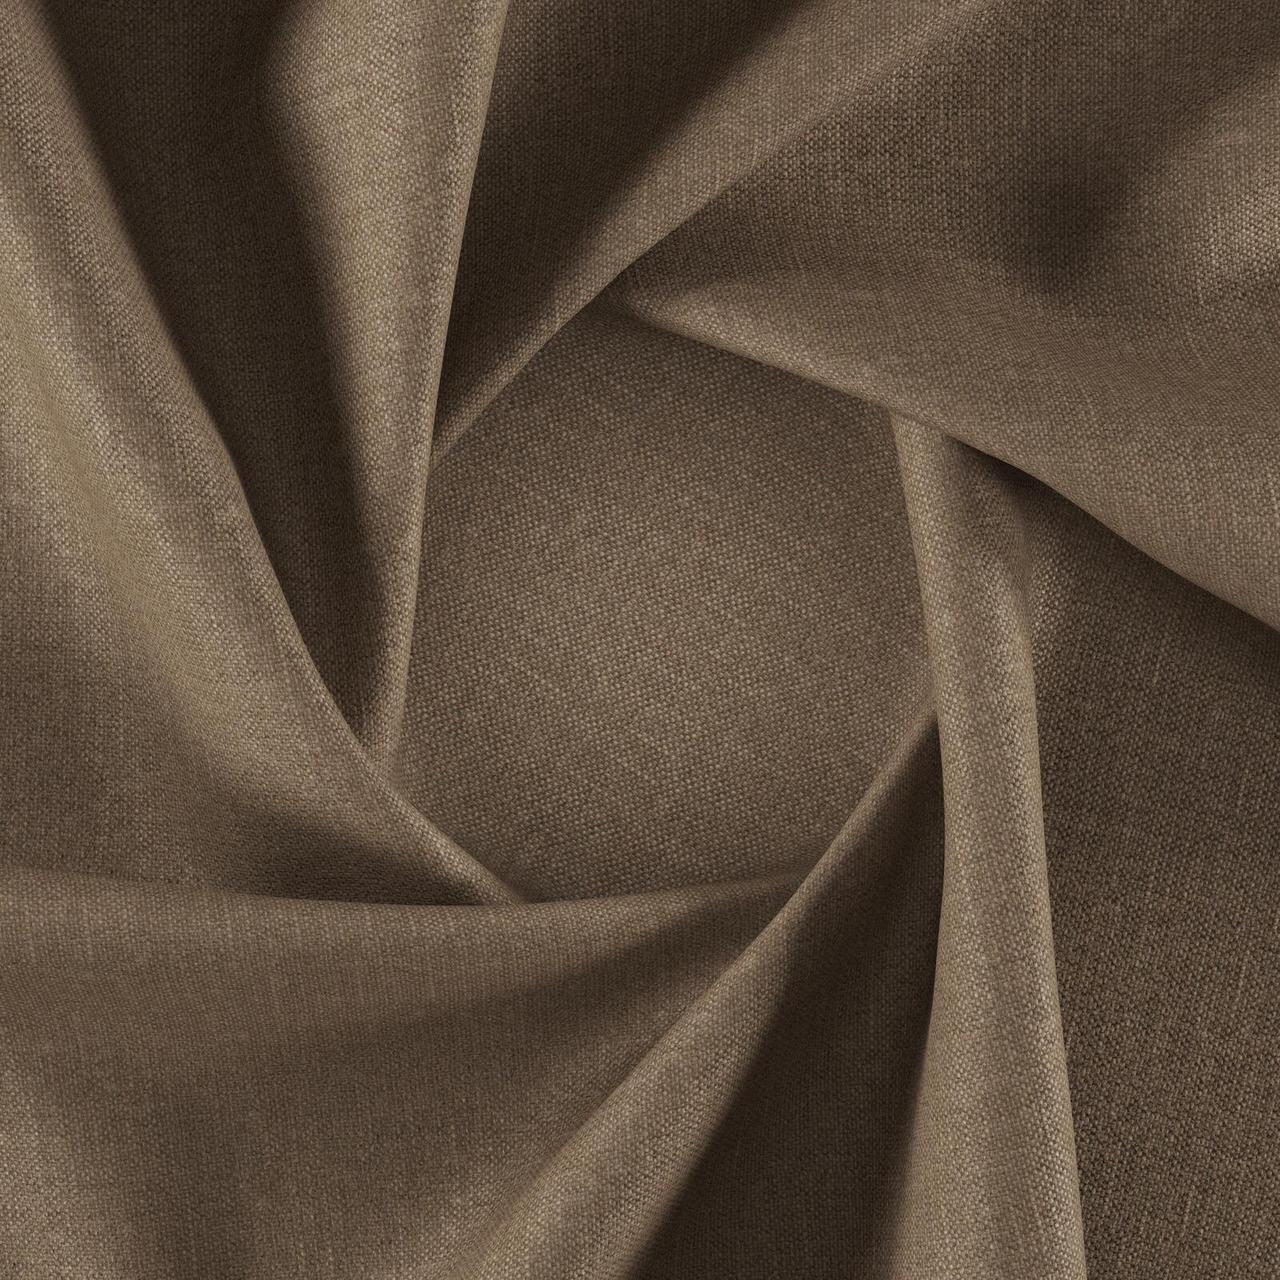 Тканина для перетяжки м'яких меблів шеніл Перфекто (Perfecto) бежево-коричневого кольору